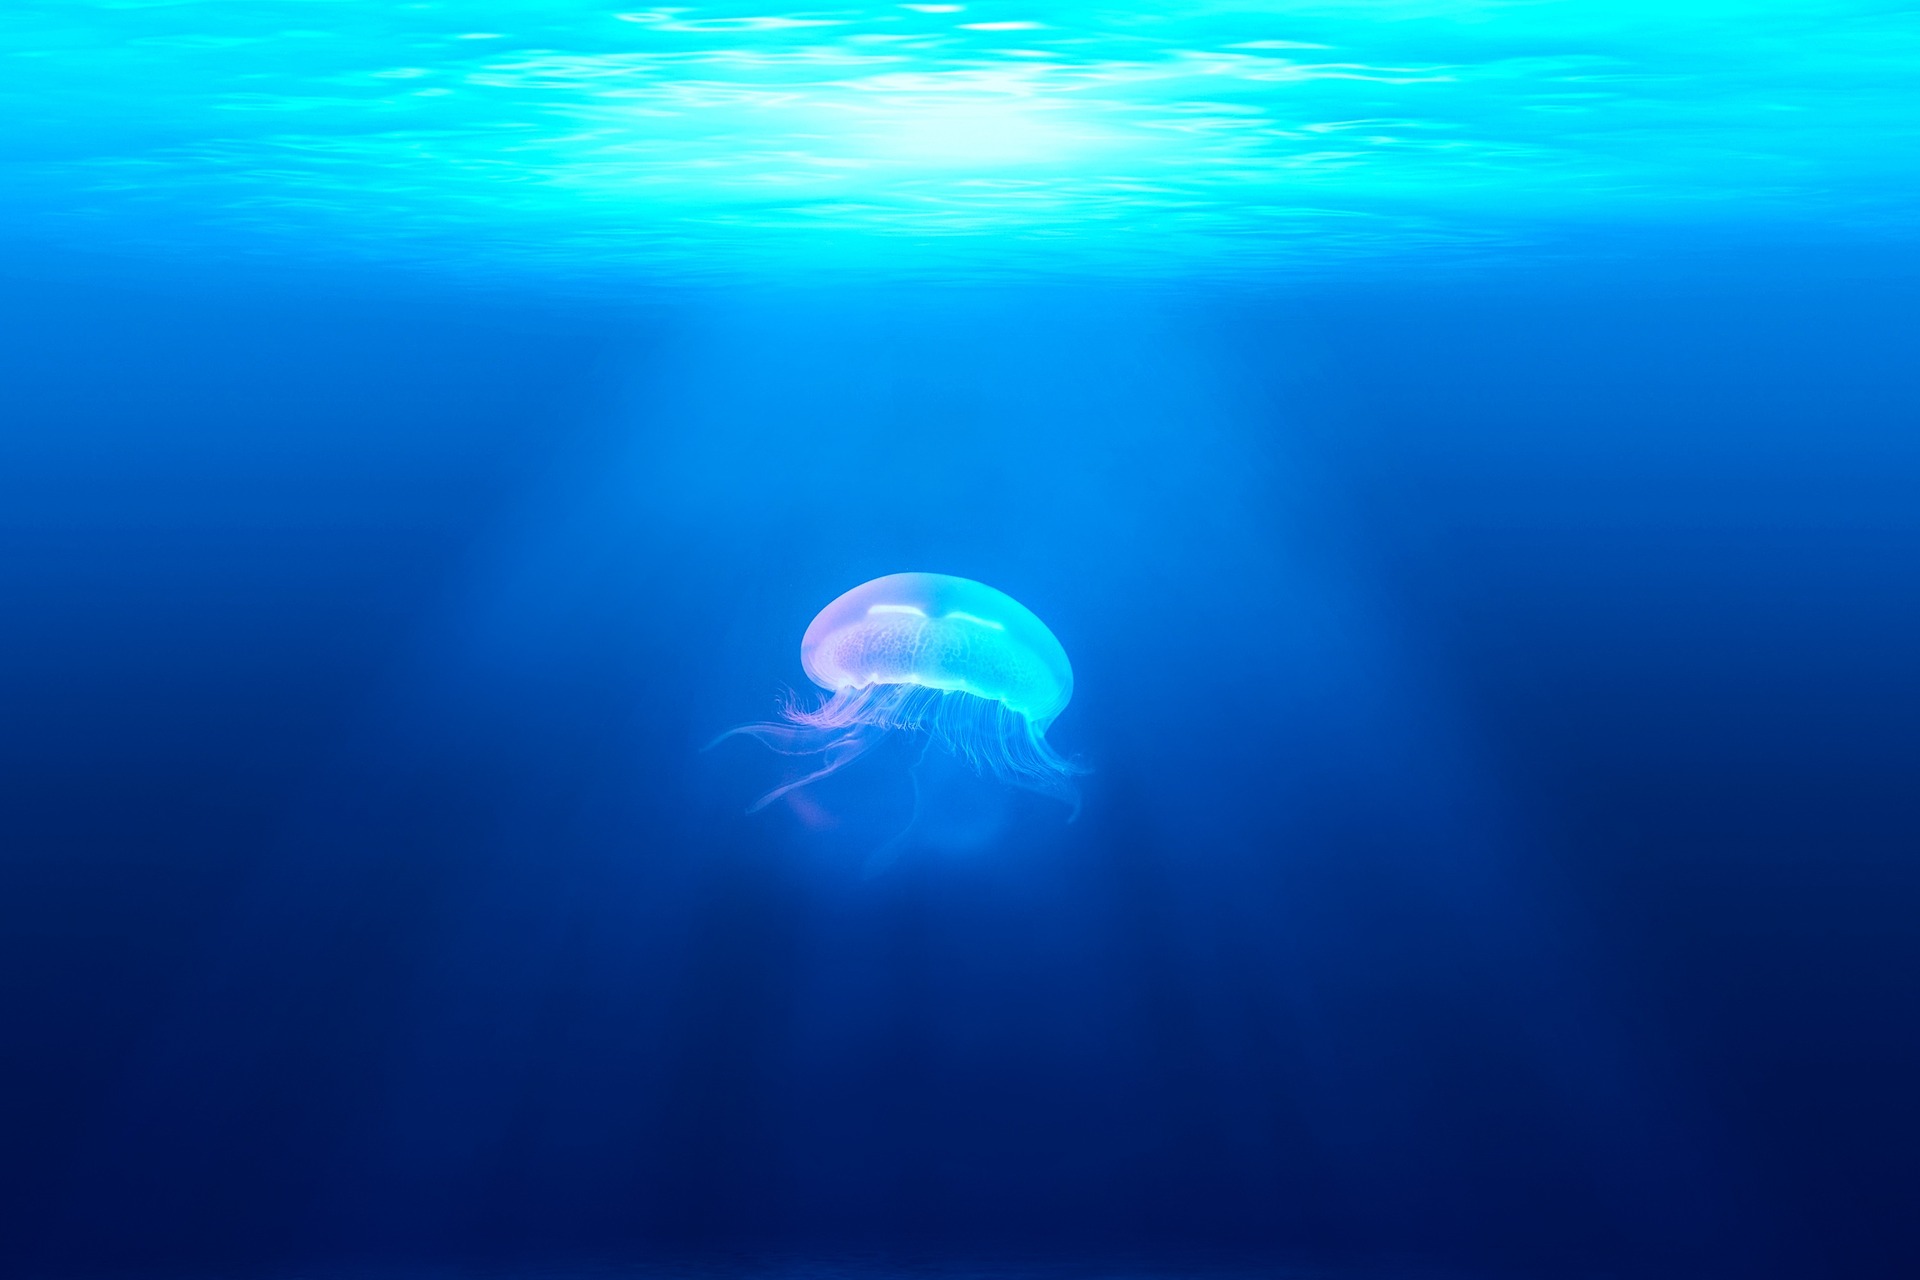 Chełbia modra - jellyfish